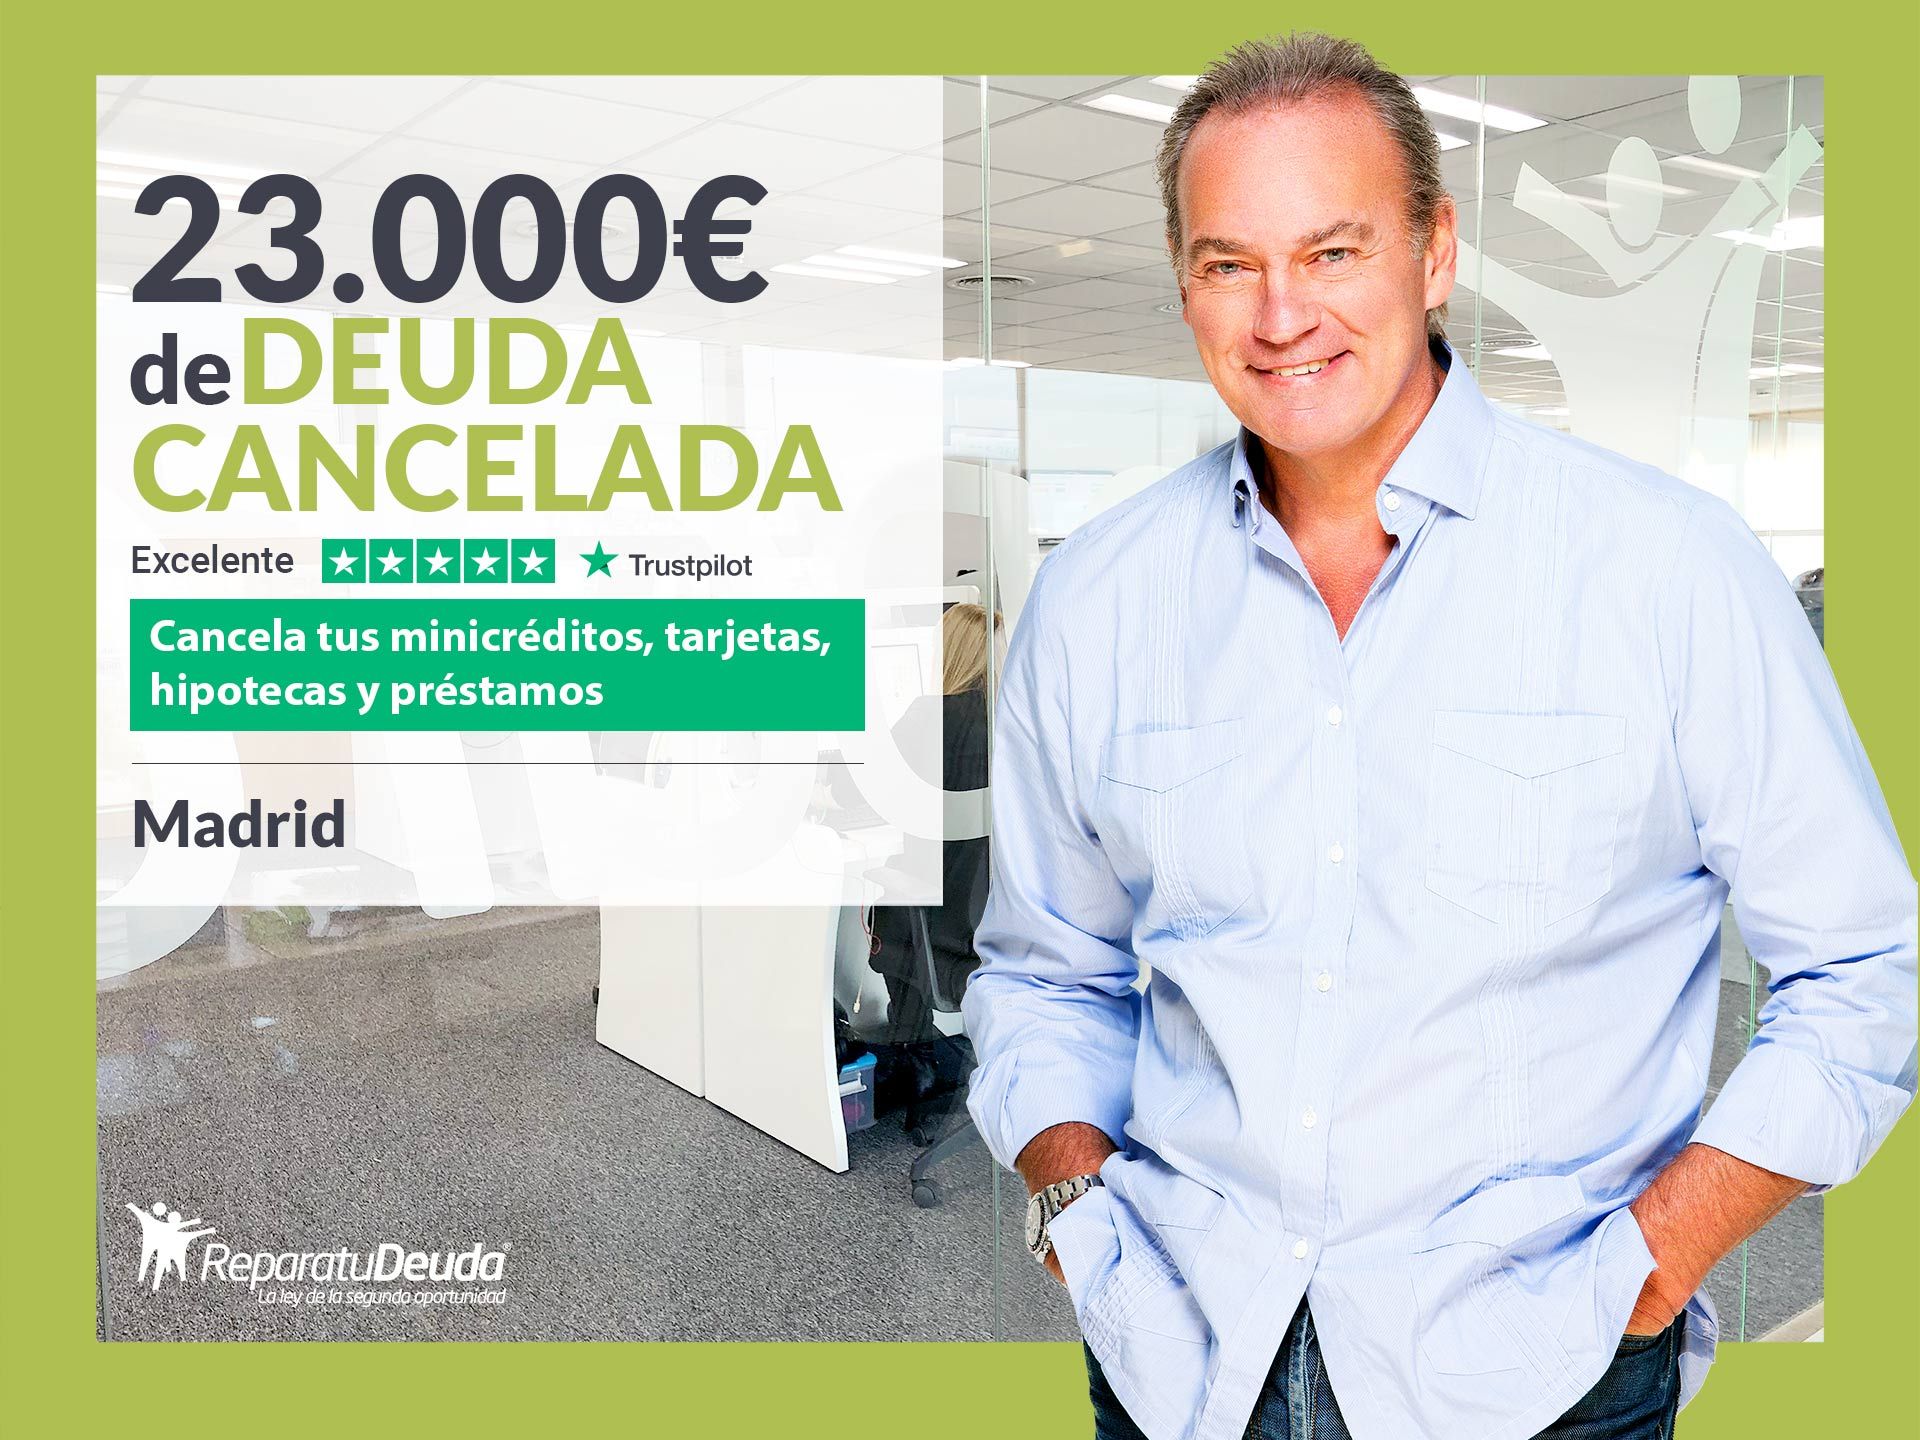 Repara tu Deuda Abogados cancela 23.000? en Madrid con la Ley de Segunda Oportunidad